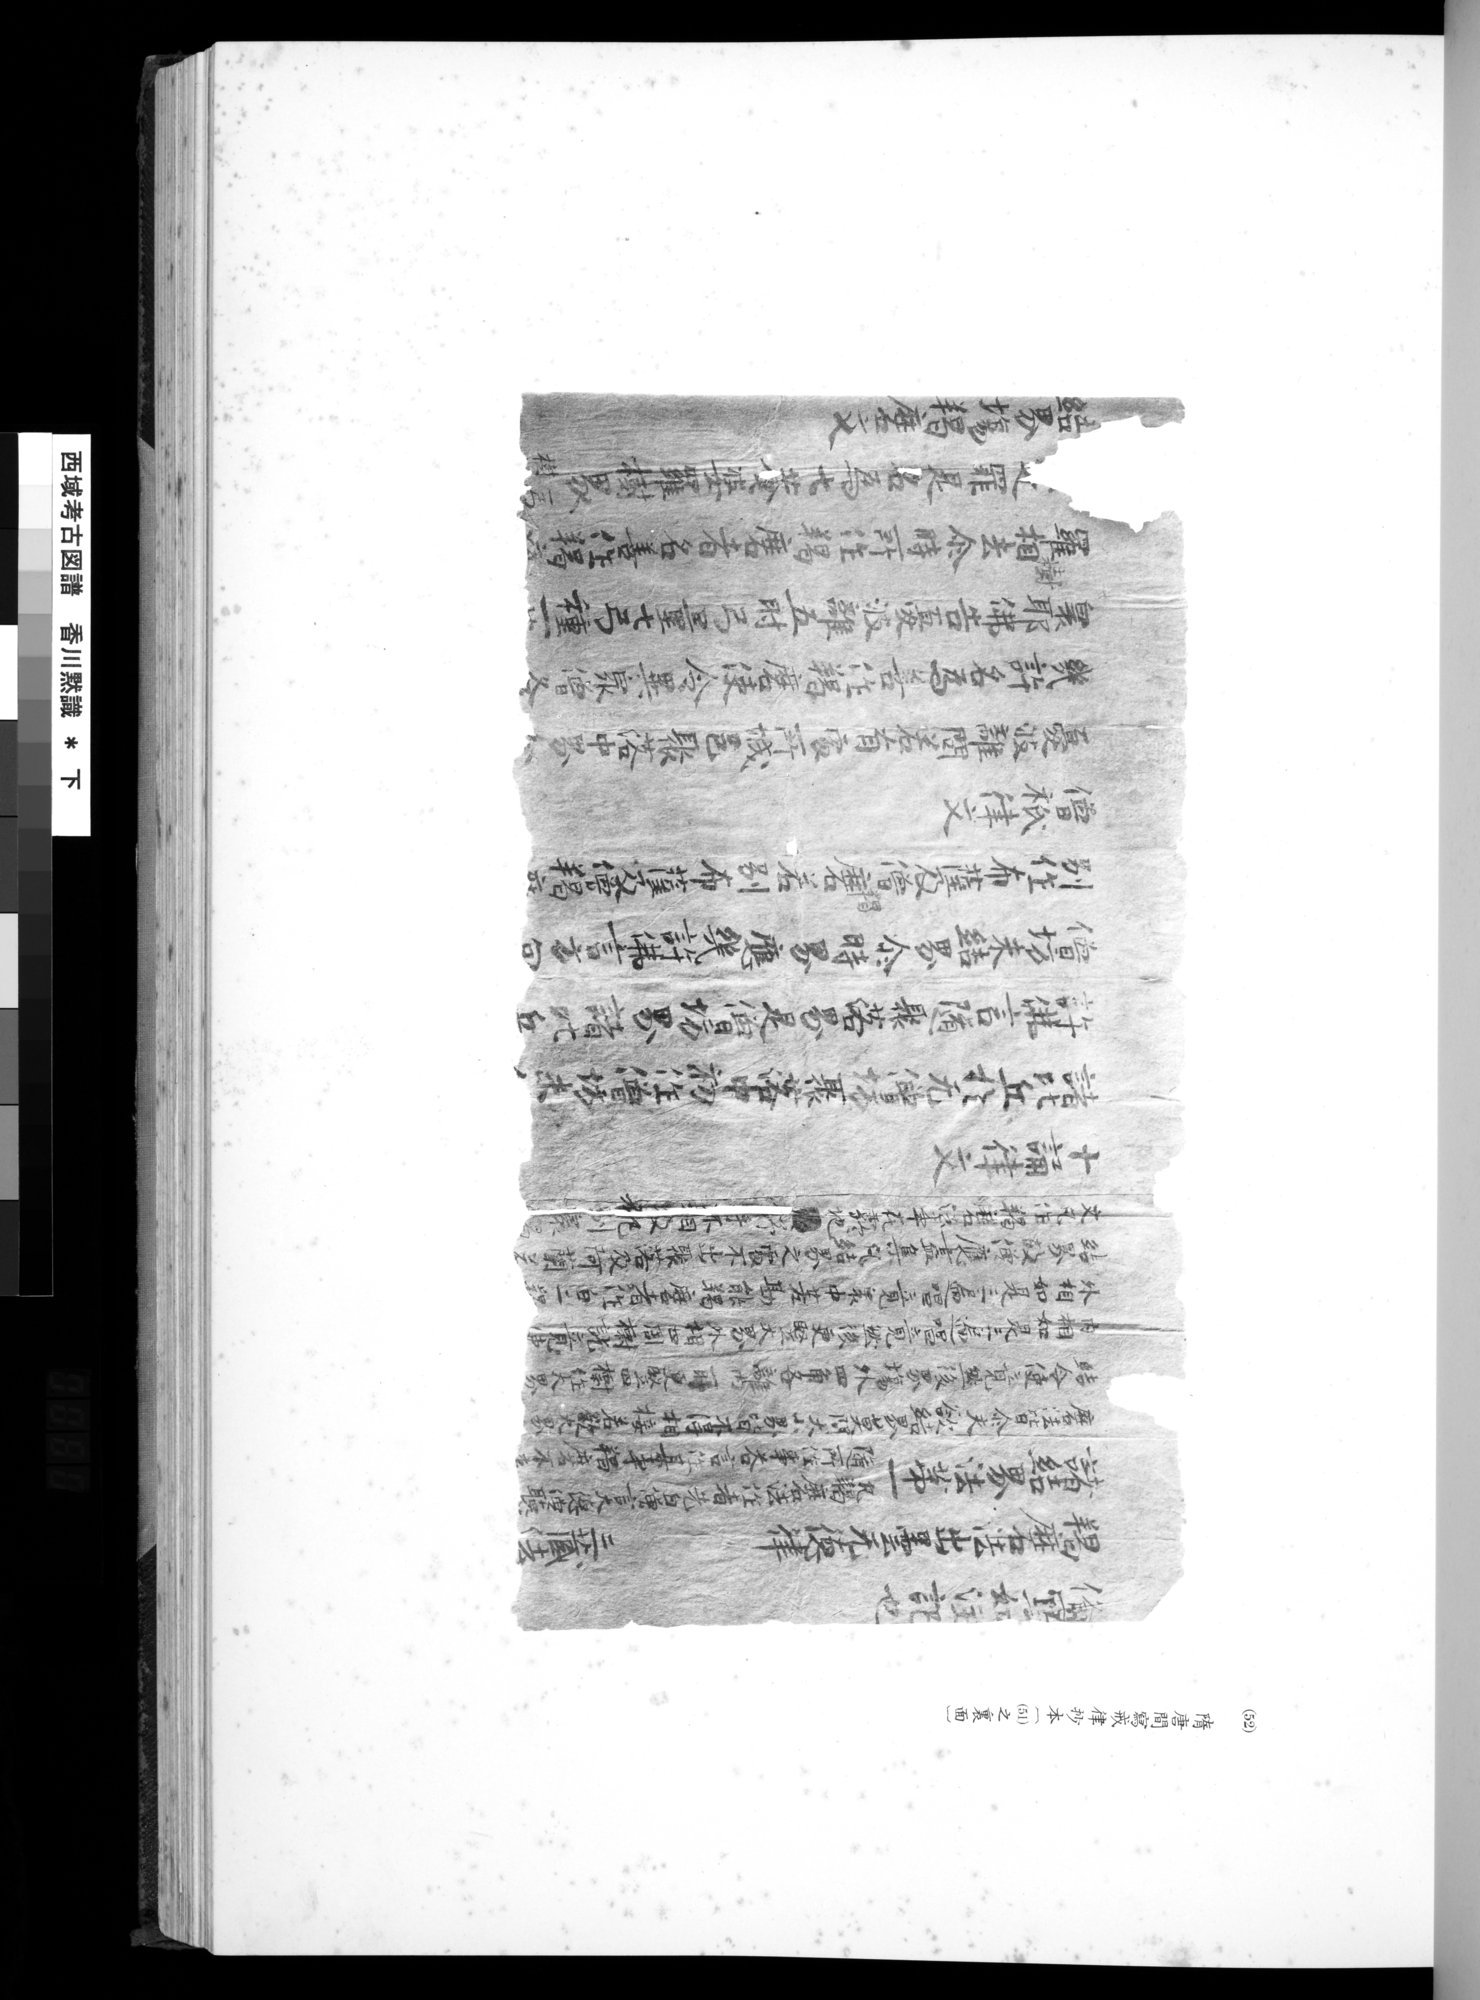 西域考古図譜 : vol.2 / 119 ページ（白黒高解像度画像）